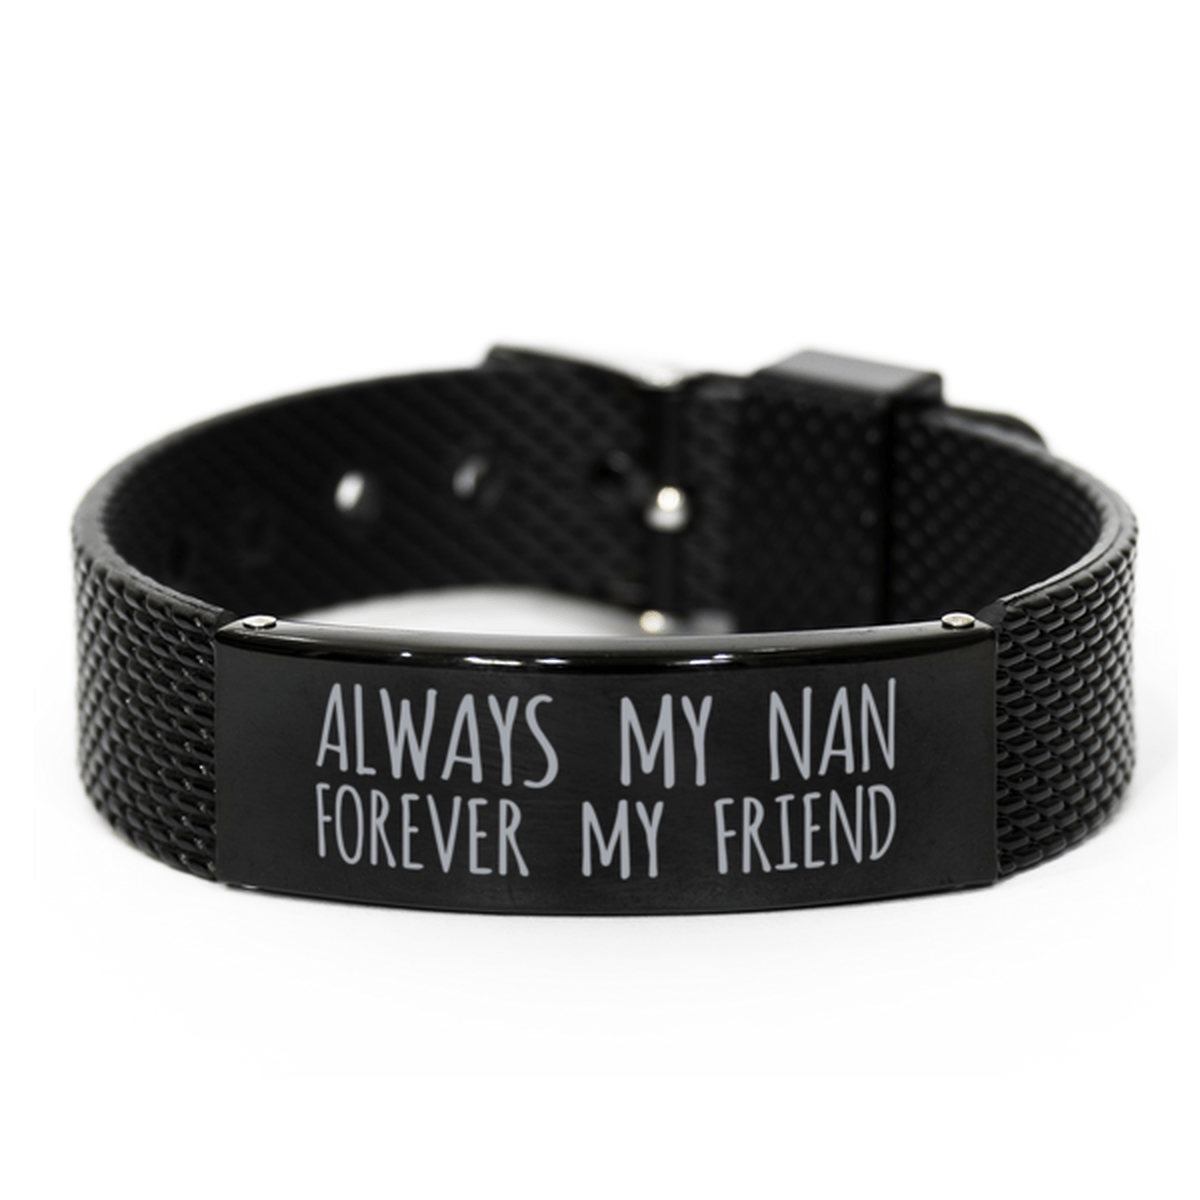 Inspirational Nan Black Shark Mesh Bracelet, Always My Nan Forever My Friend, Best Birthday Gifts for Family Friends